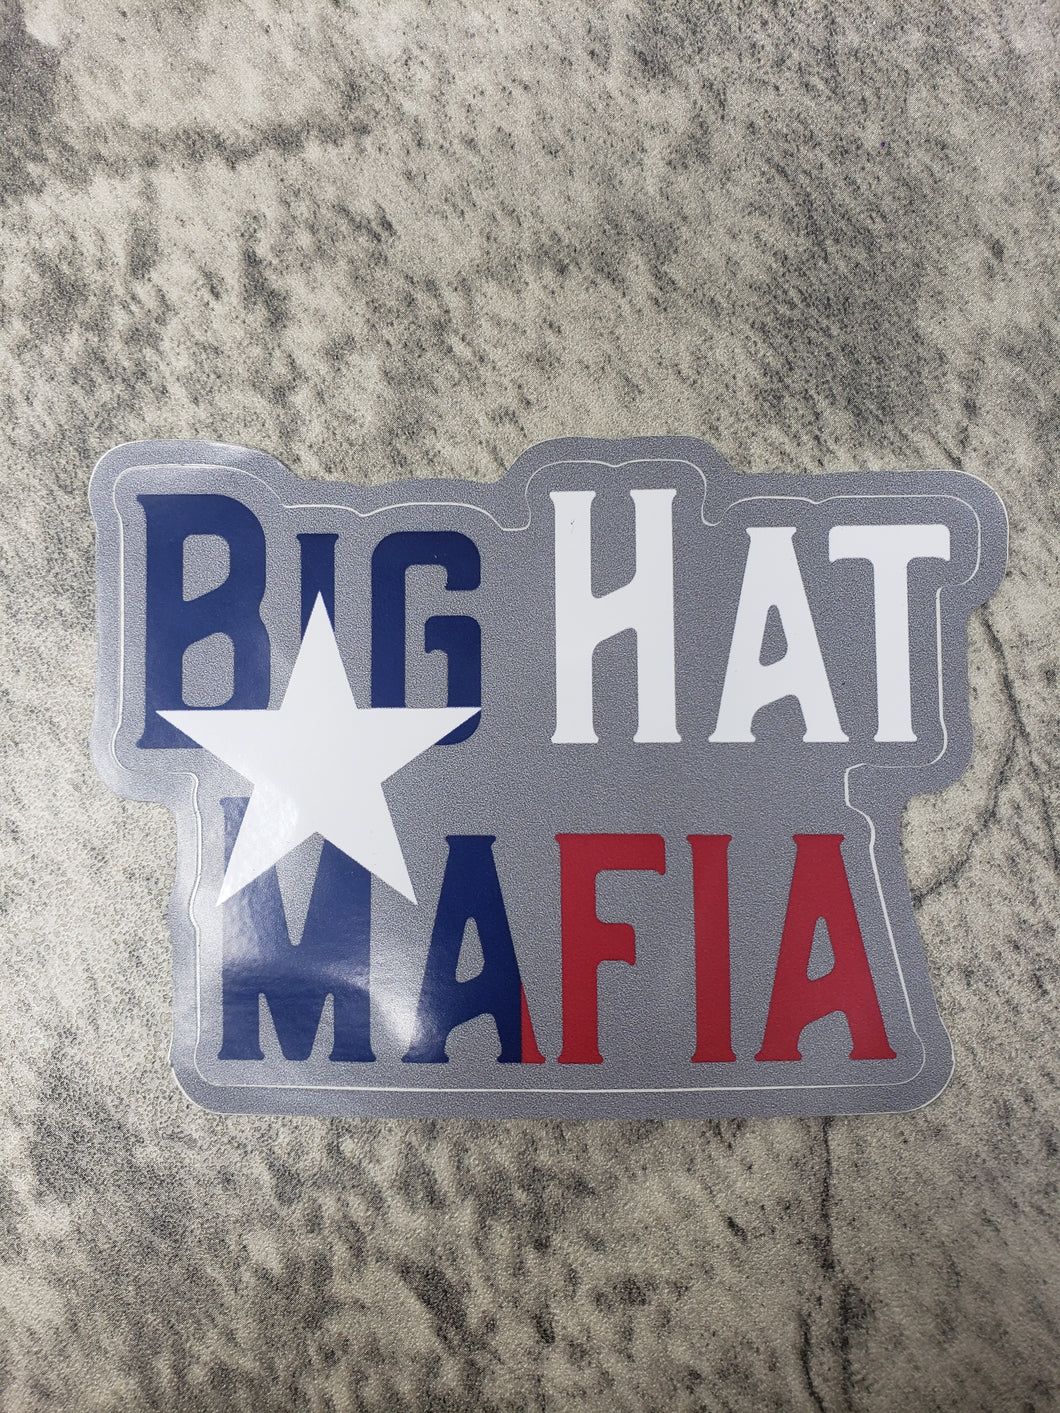 Big Hat Mafia Texas sticker